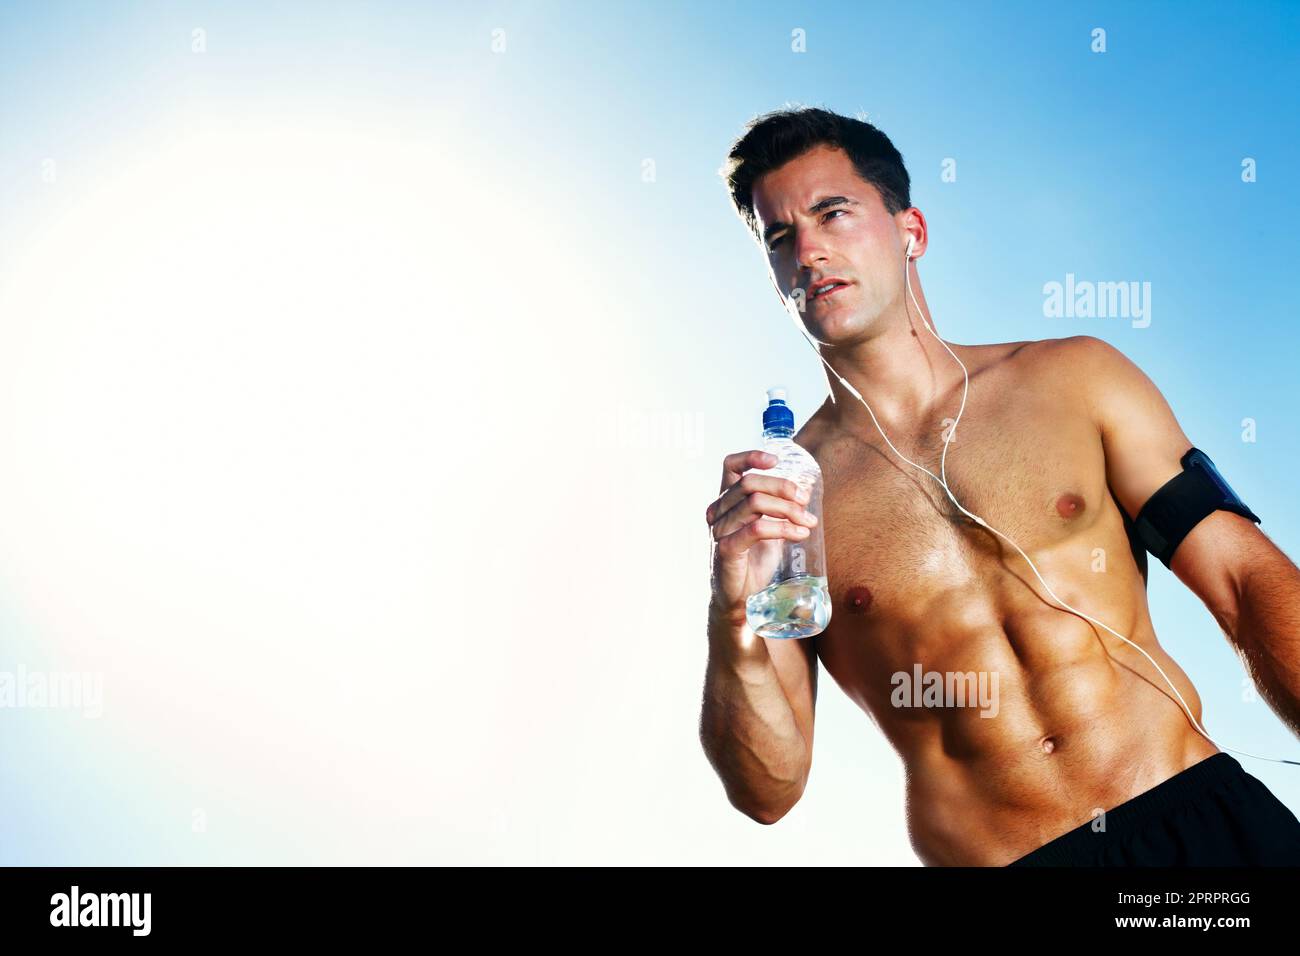 Junger muskulöser Mann mit einer Wasserflasche - Outdoor. Porträt eines jungen muskulösen Mannes mit einer Wasserflasche am wolkigen Himmel - Blick auf den Copyspace. Stockfoto